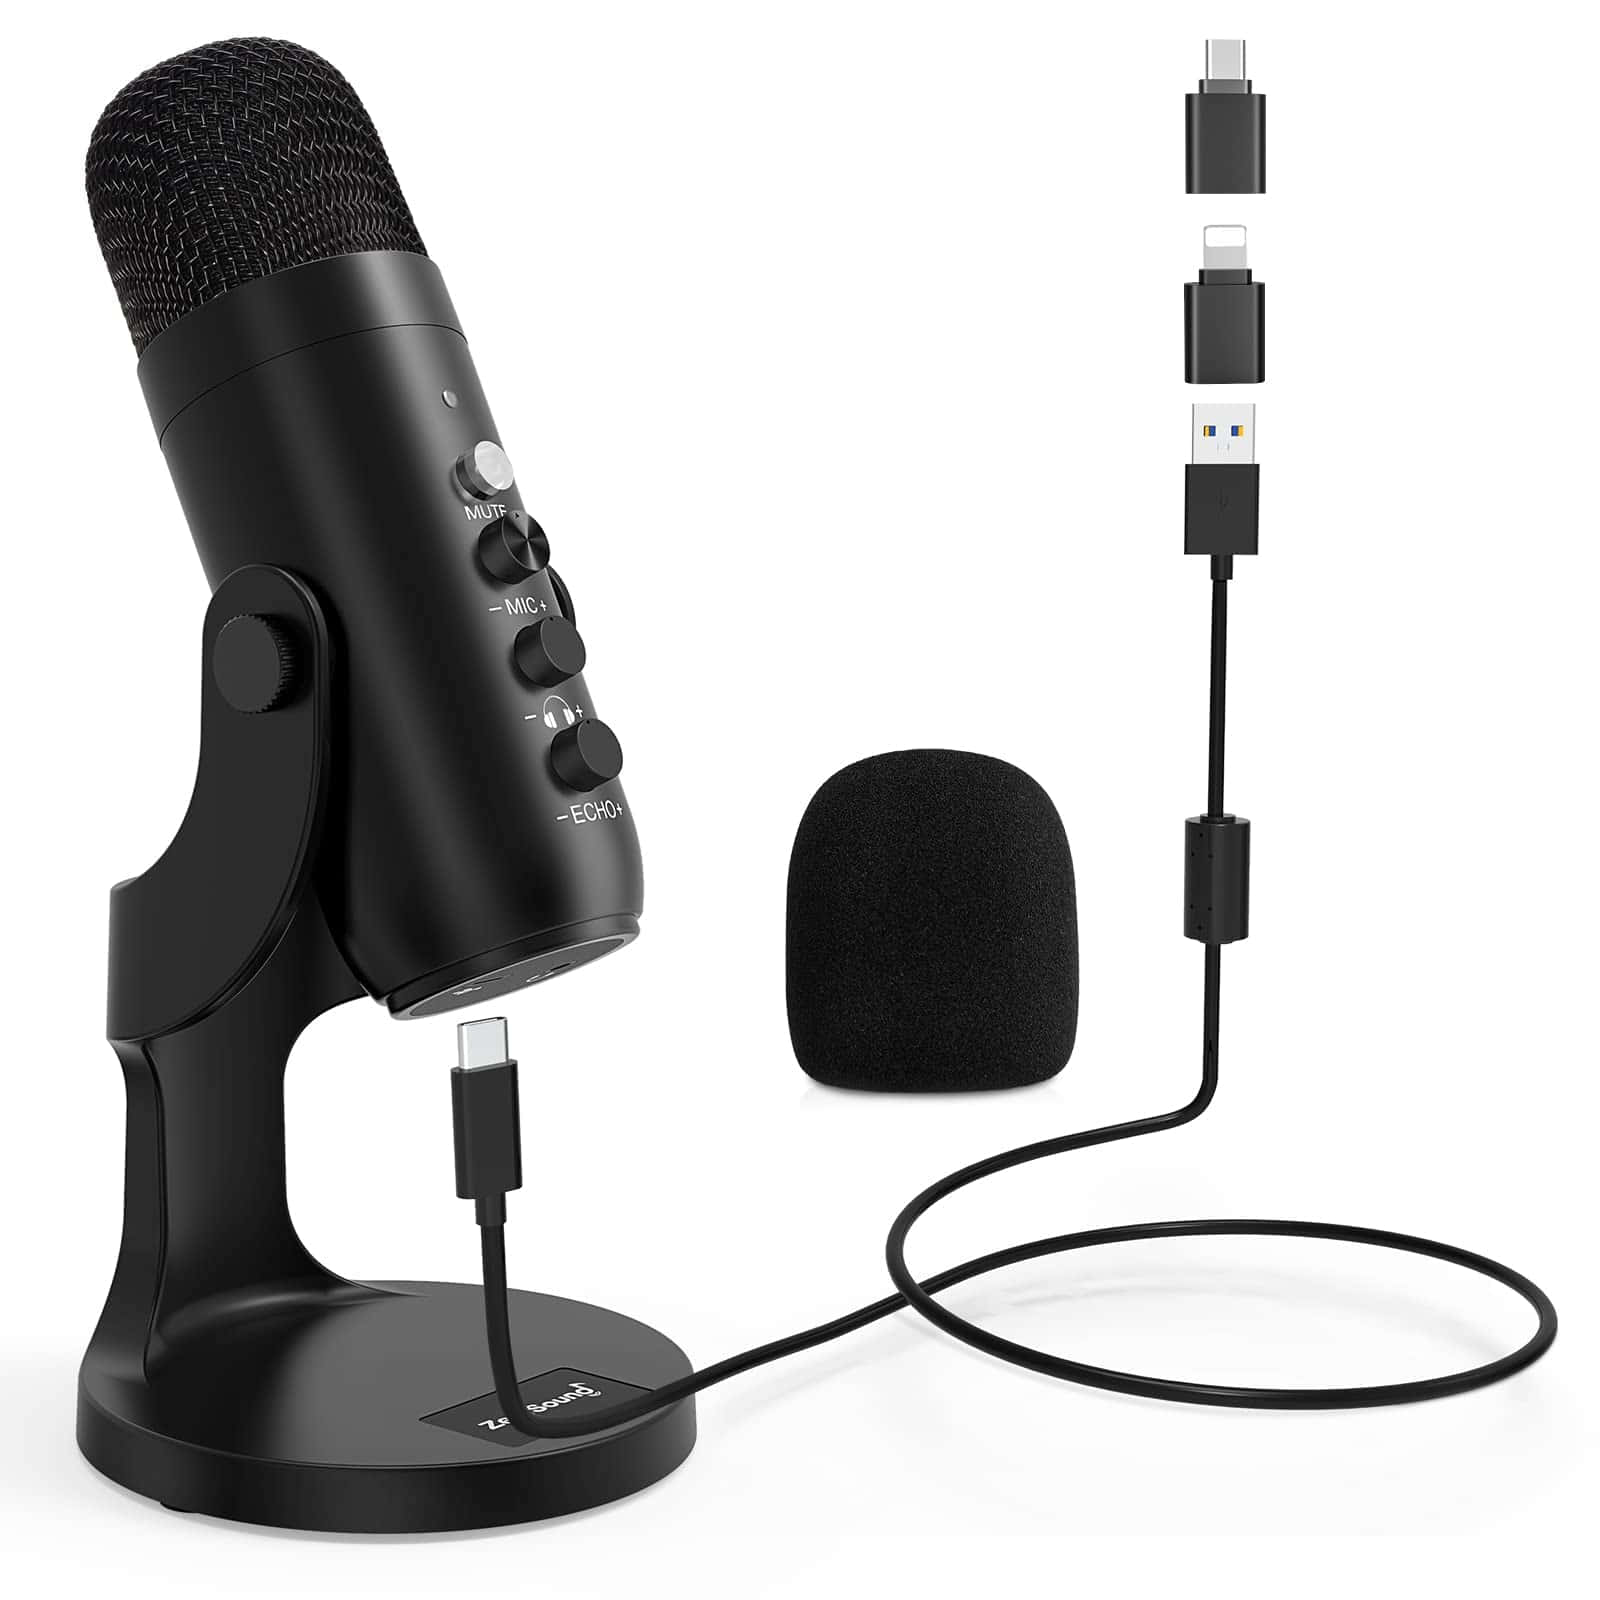 Enmikrofon Med Et Usb-kabel Og En Mikrofonstander